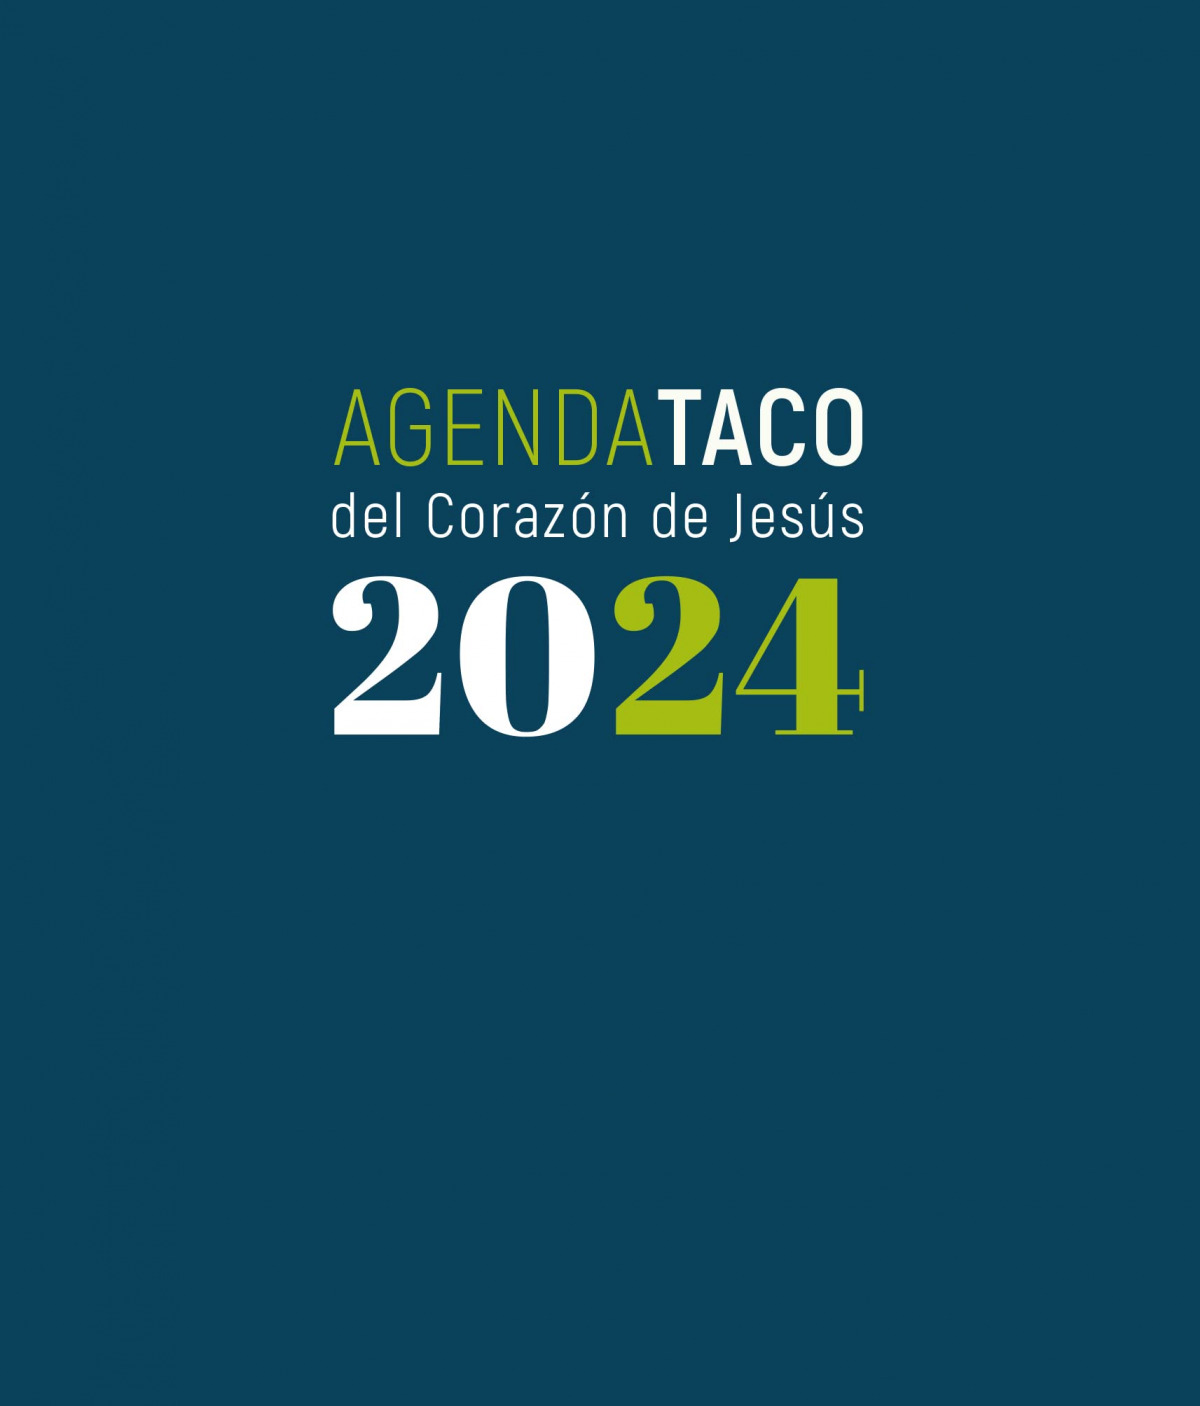 AGENDA TACO DEL CORAZON DE JESUS 2024